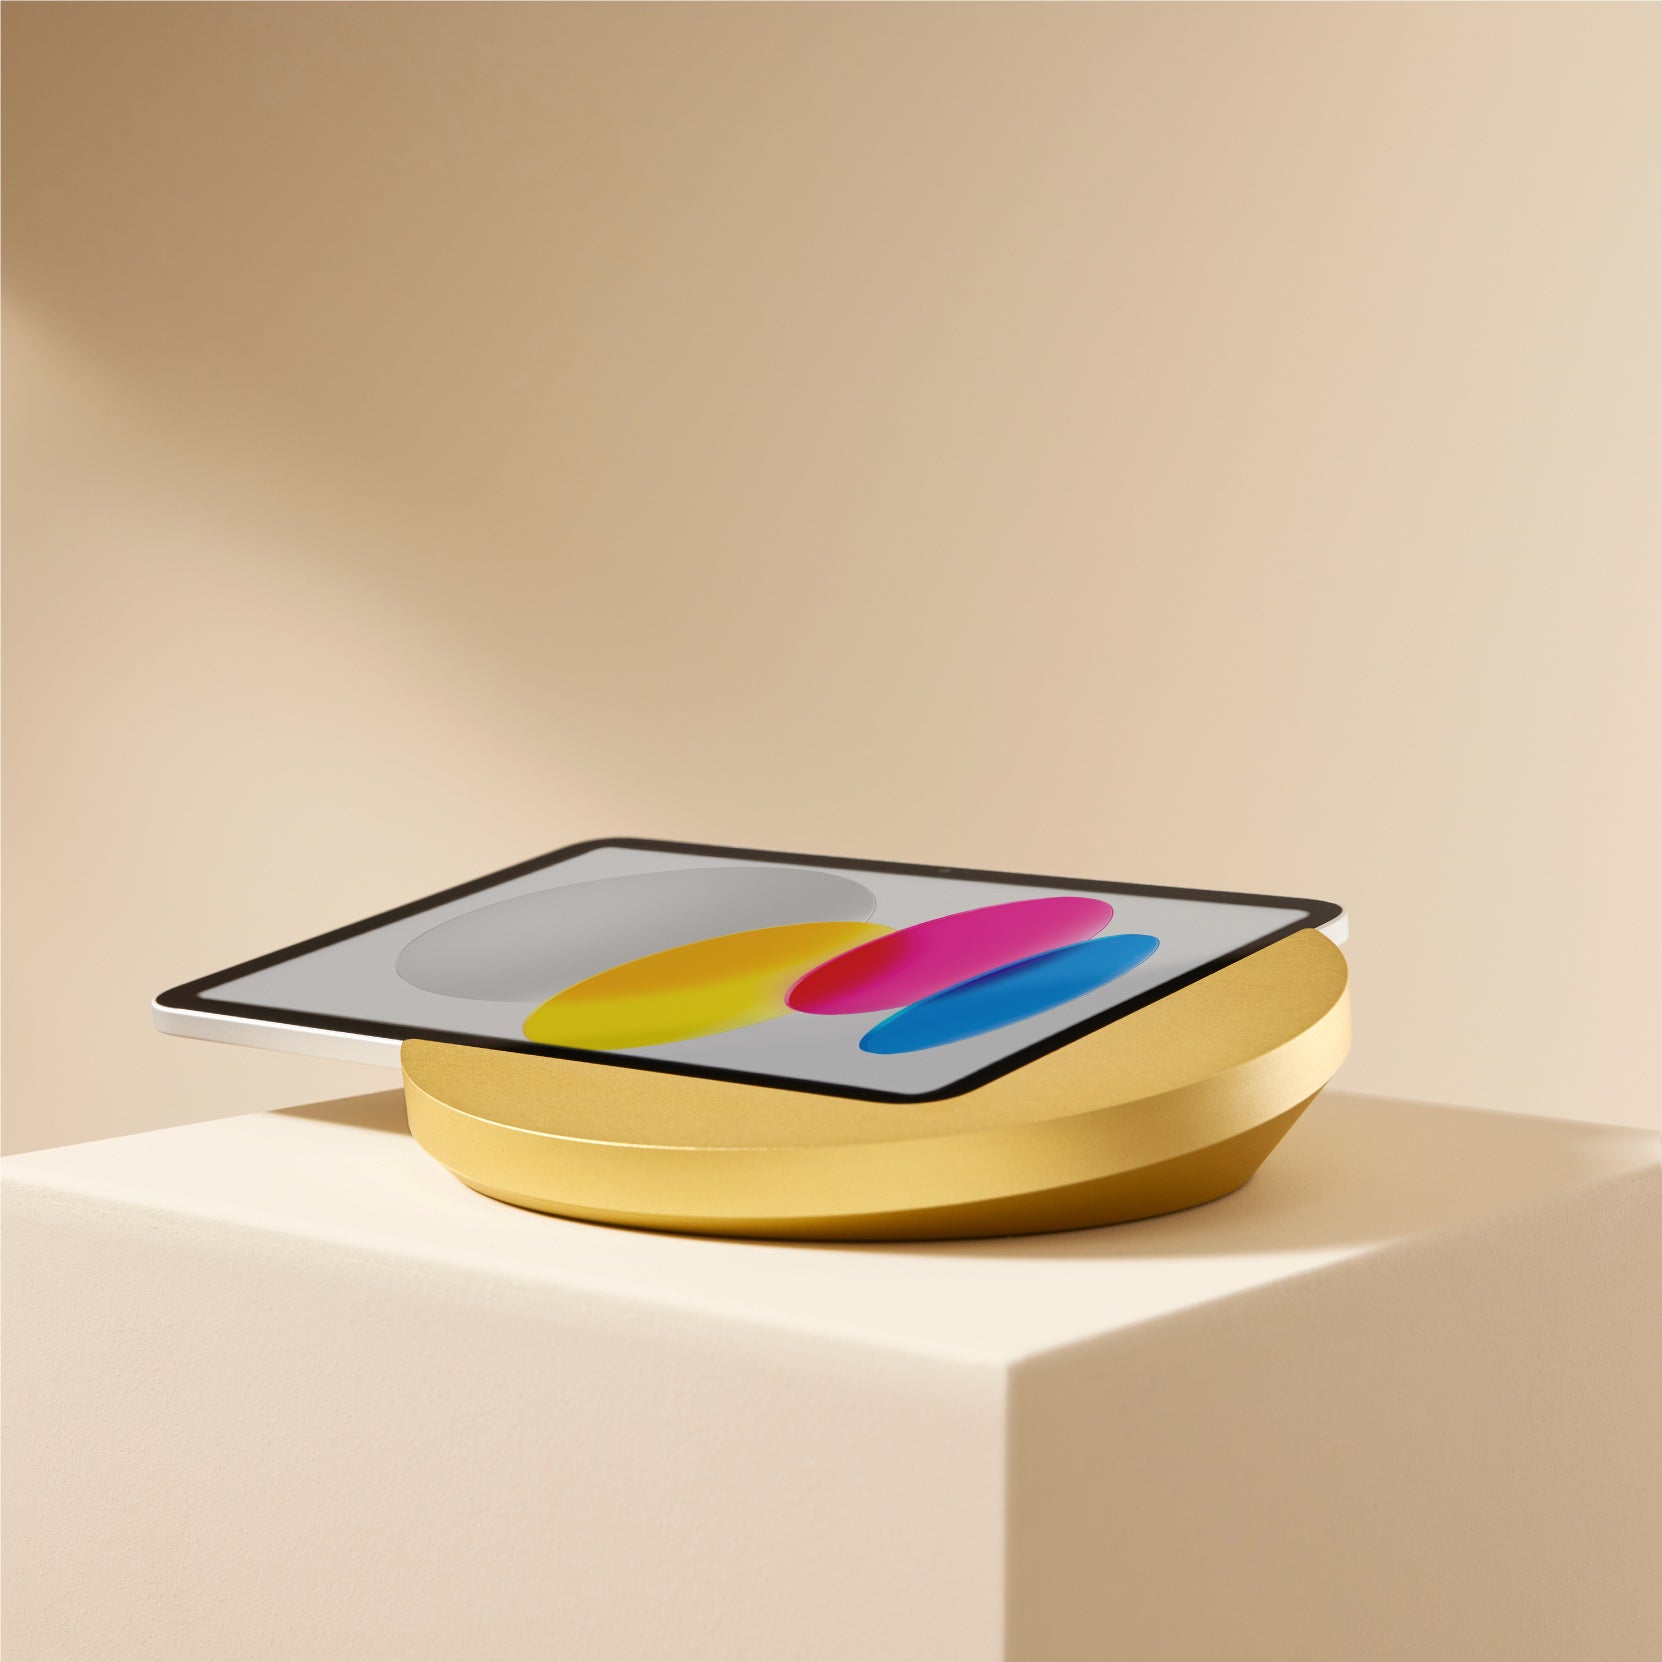 Sunset Tischkonsole für iPad